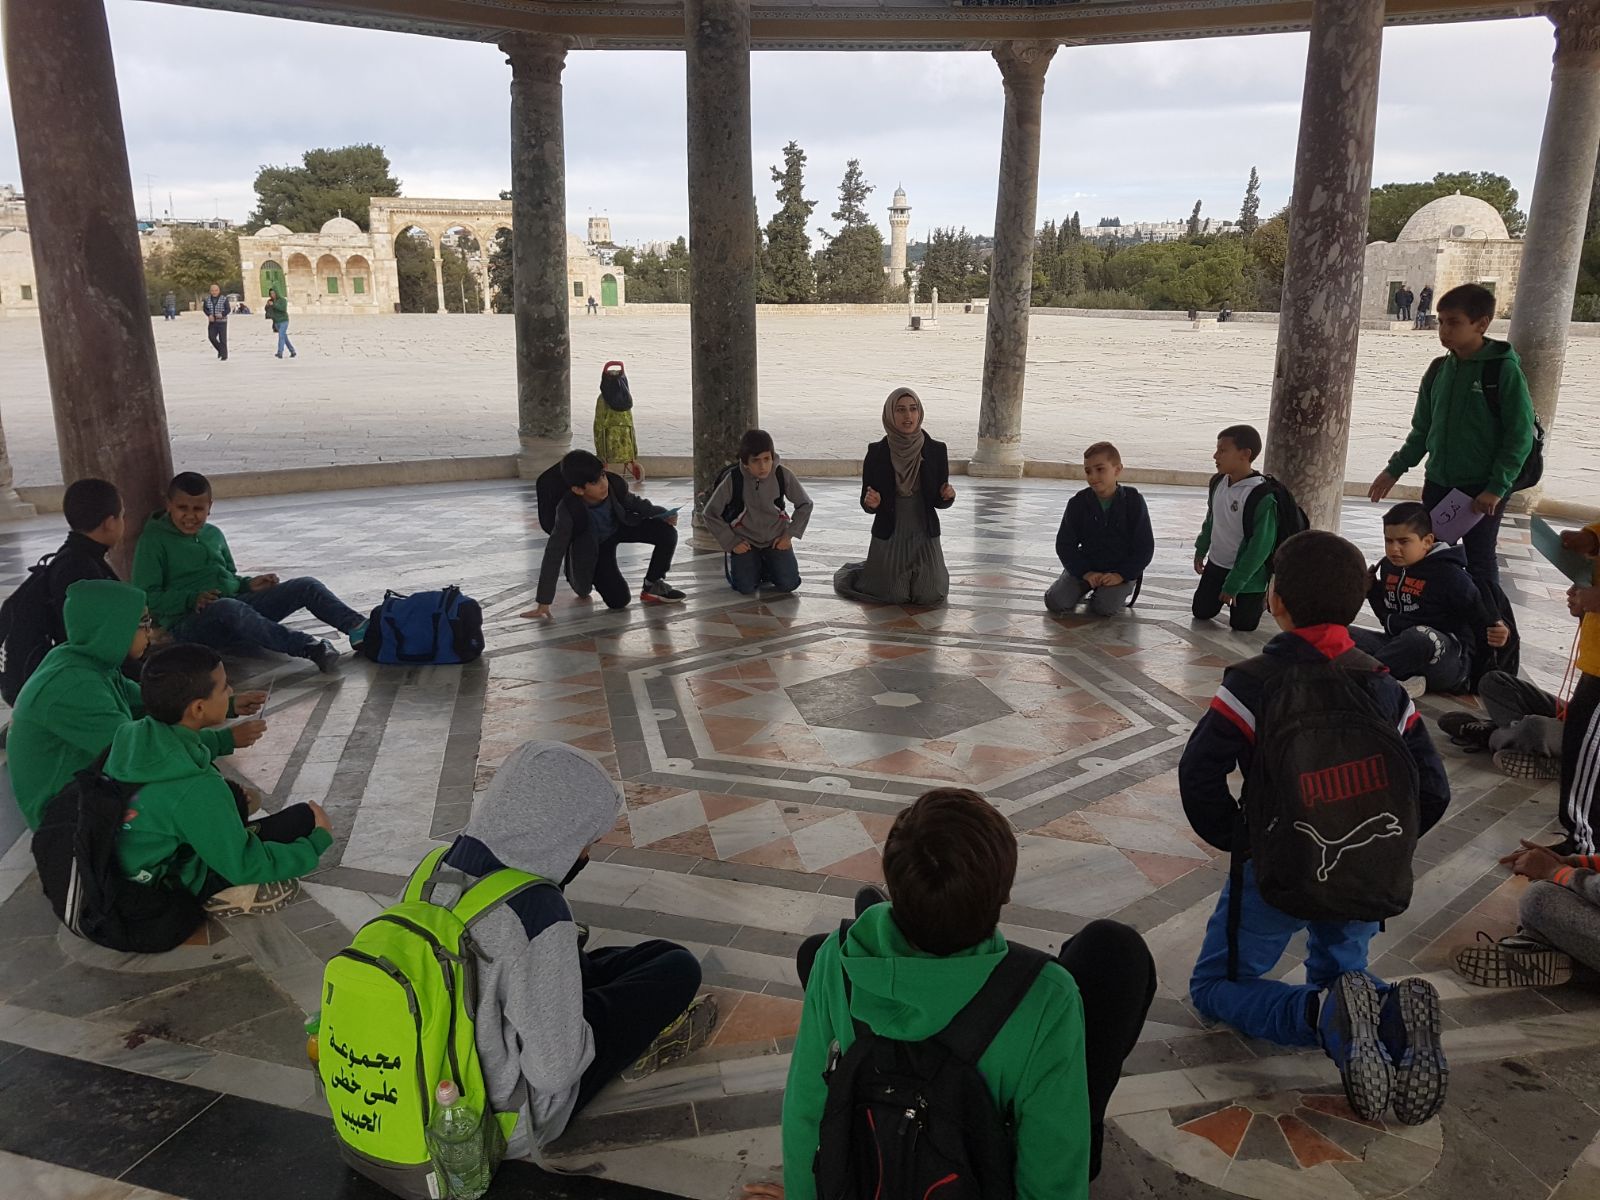 مرشدو عيون_البراق يصطحبون طلاب -مشروع غرس- في جولة إرشادية شيّقة في المسجد الأقصى